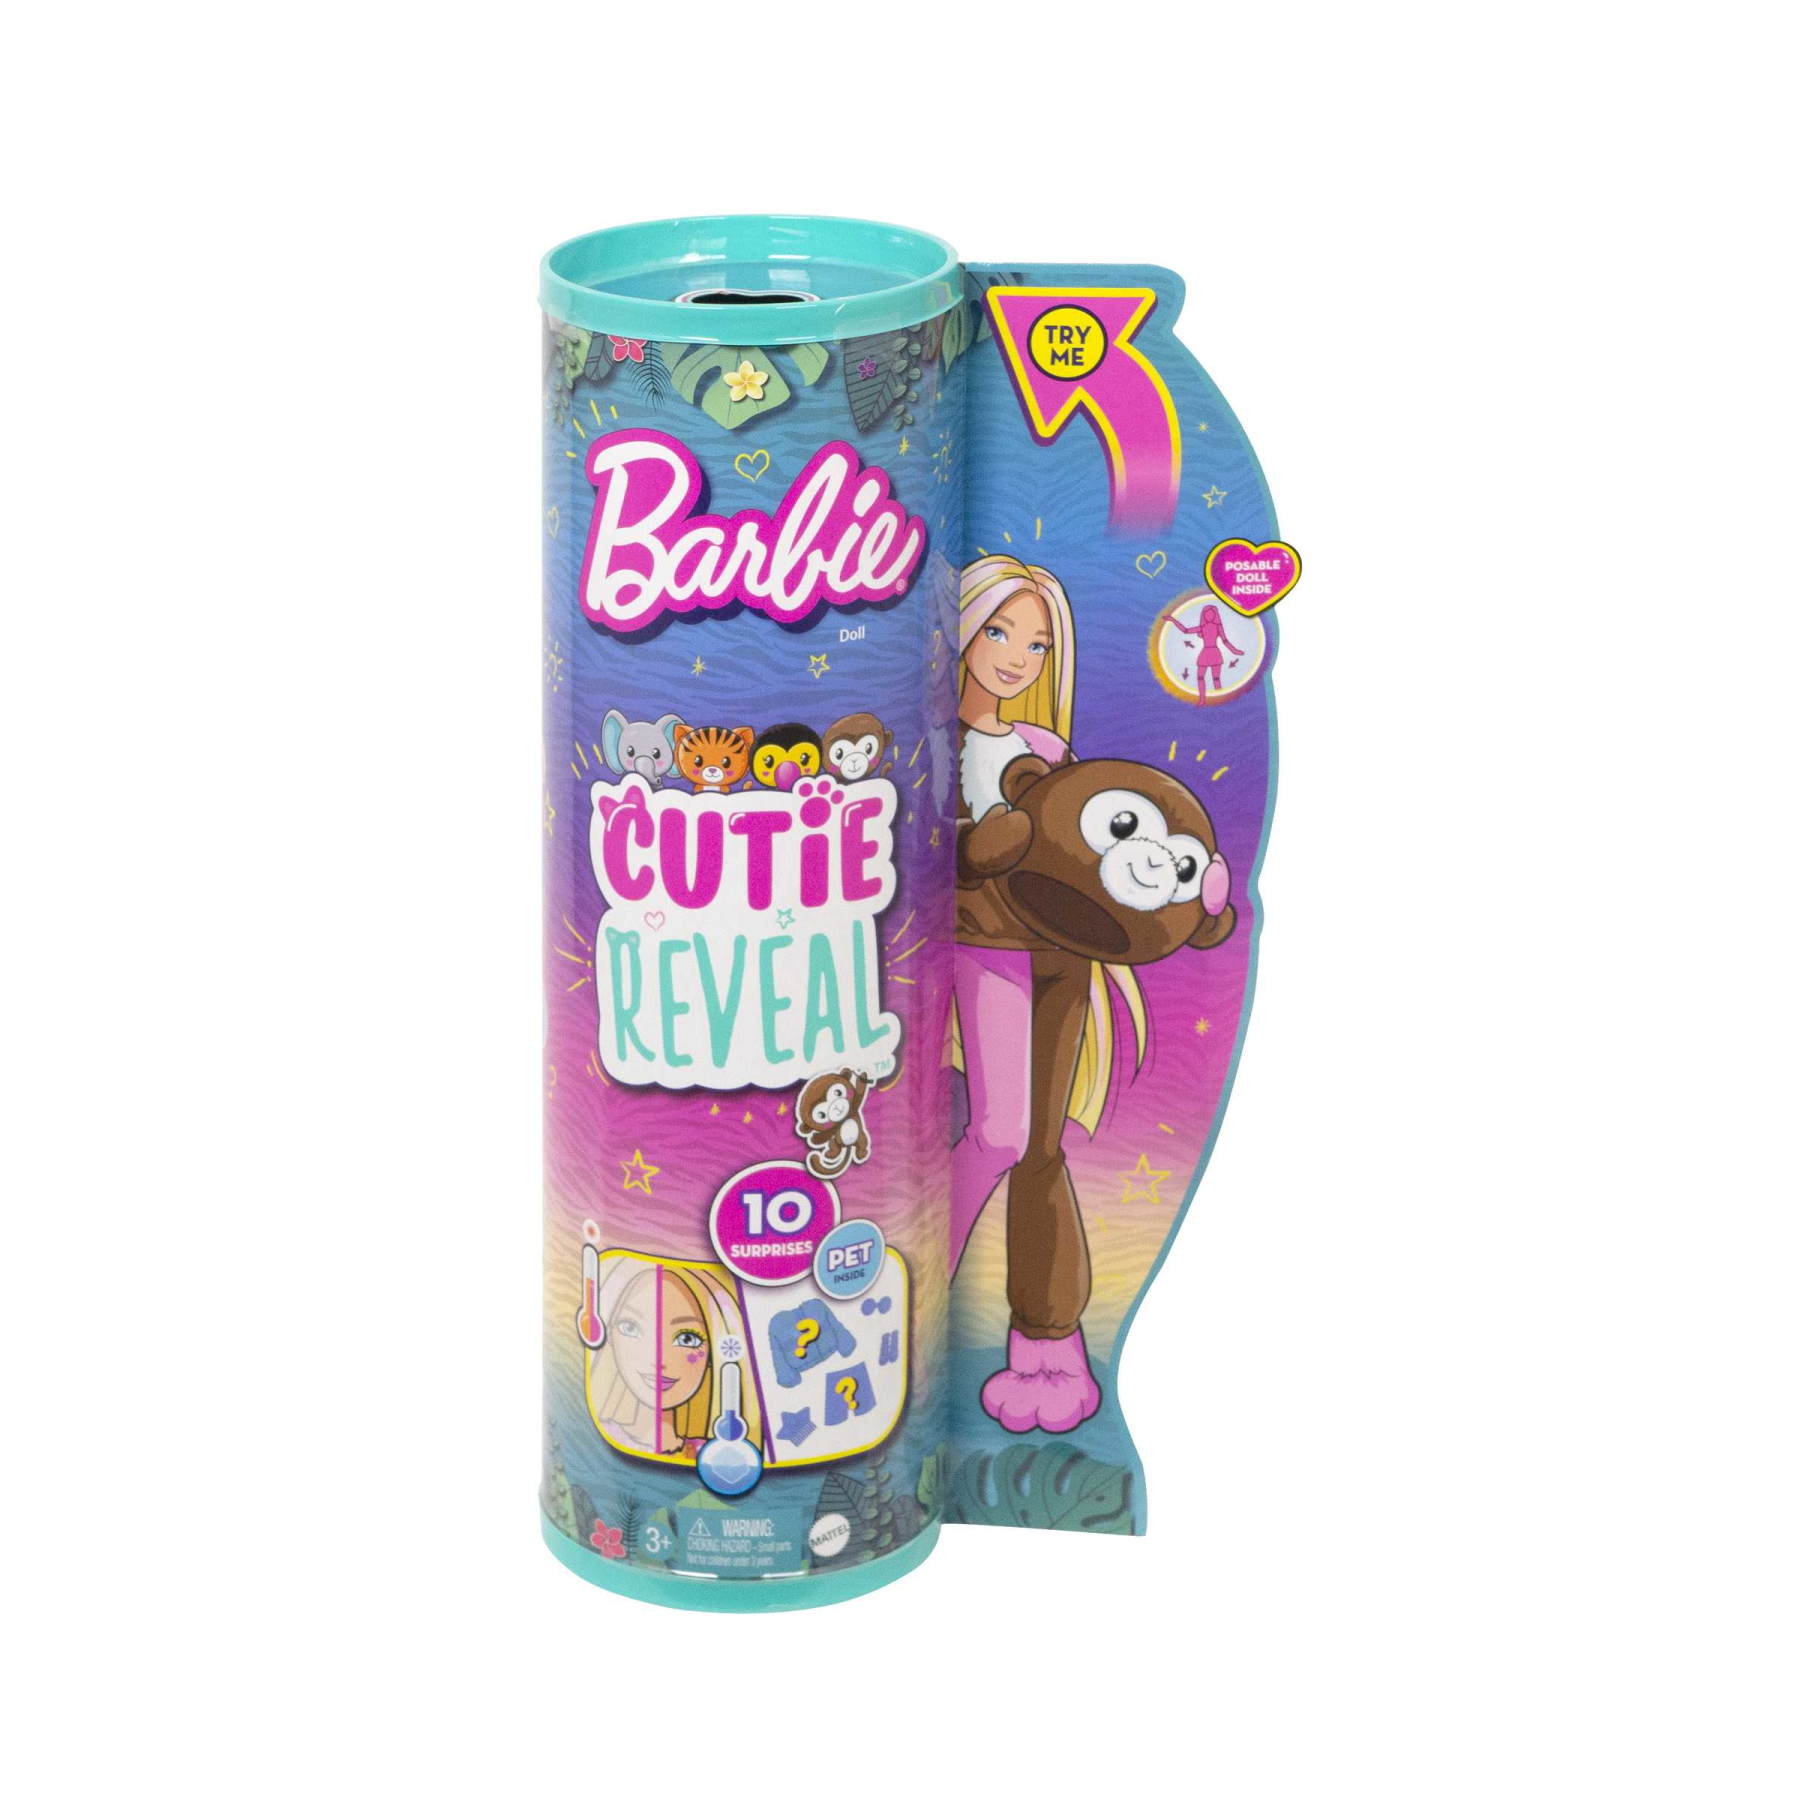 Barbie - barbie cutie reveal scimmia, serie amici della giungla, bambola con costume da scimmietta di peluche e 10 sorprese con tecnologia cambia colore, giocattolo, 3+ anni, hkr01 - Barbie